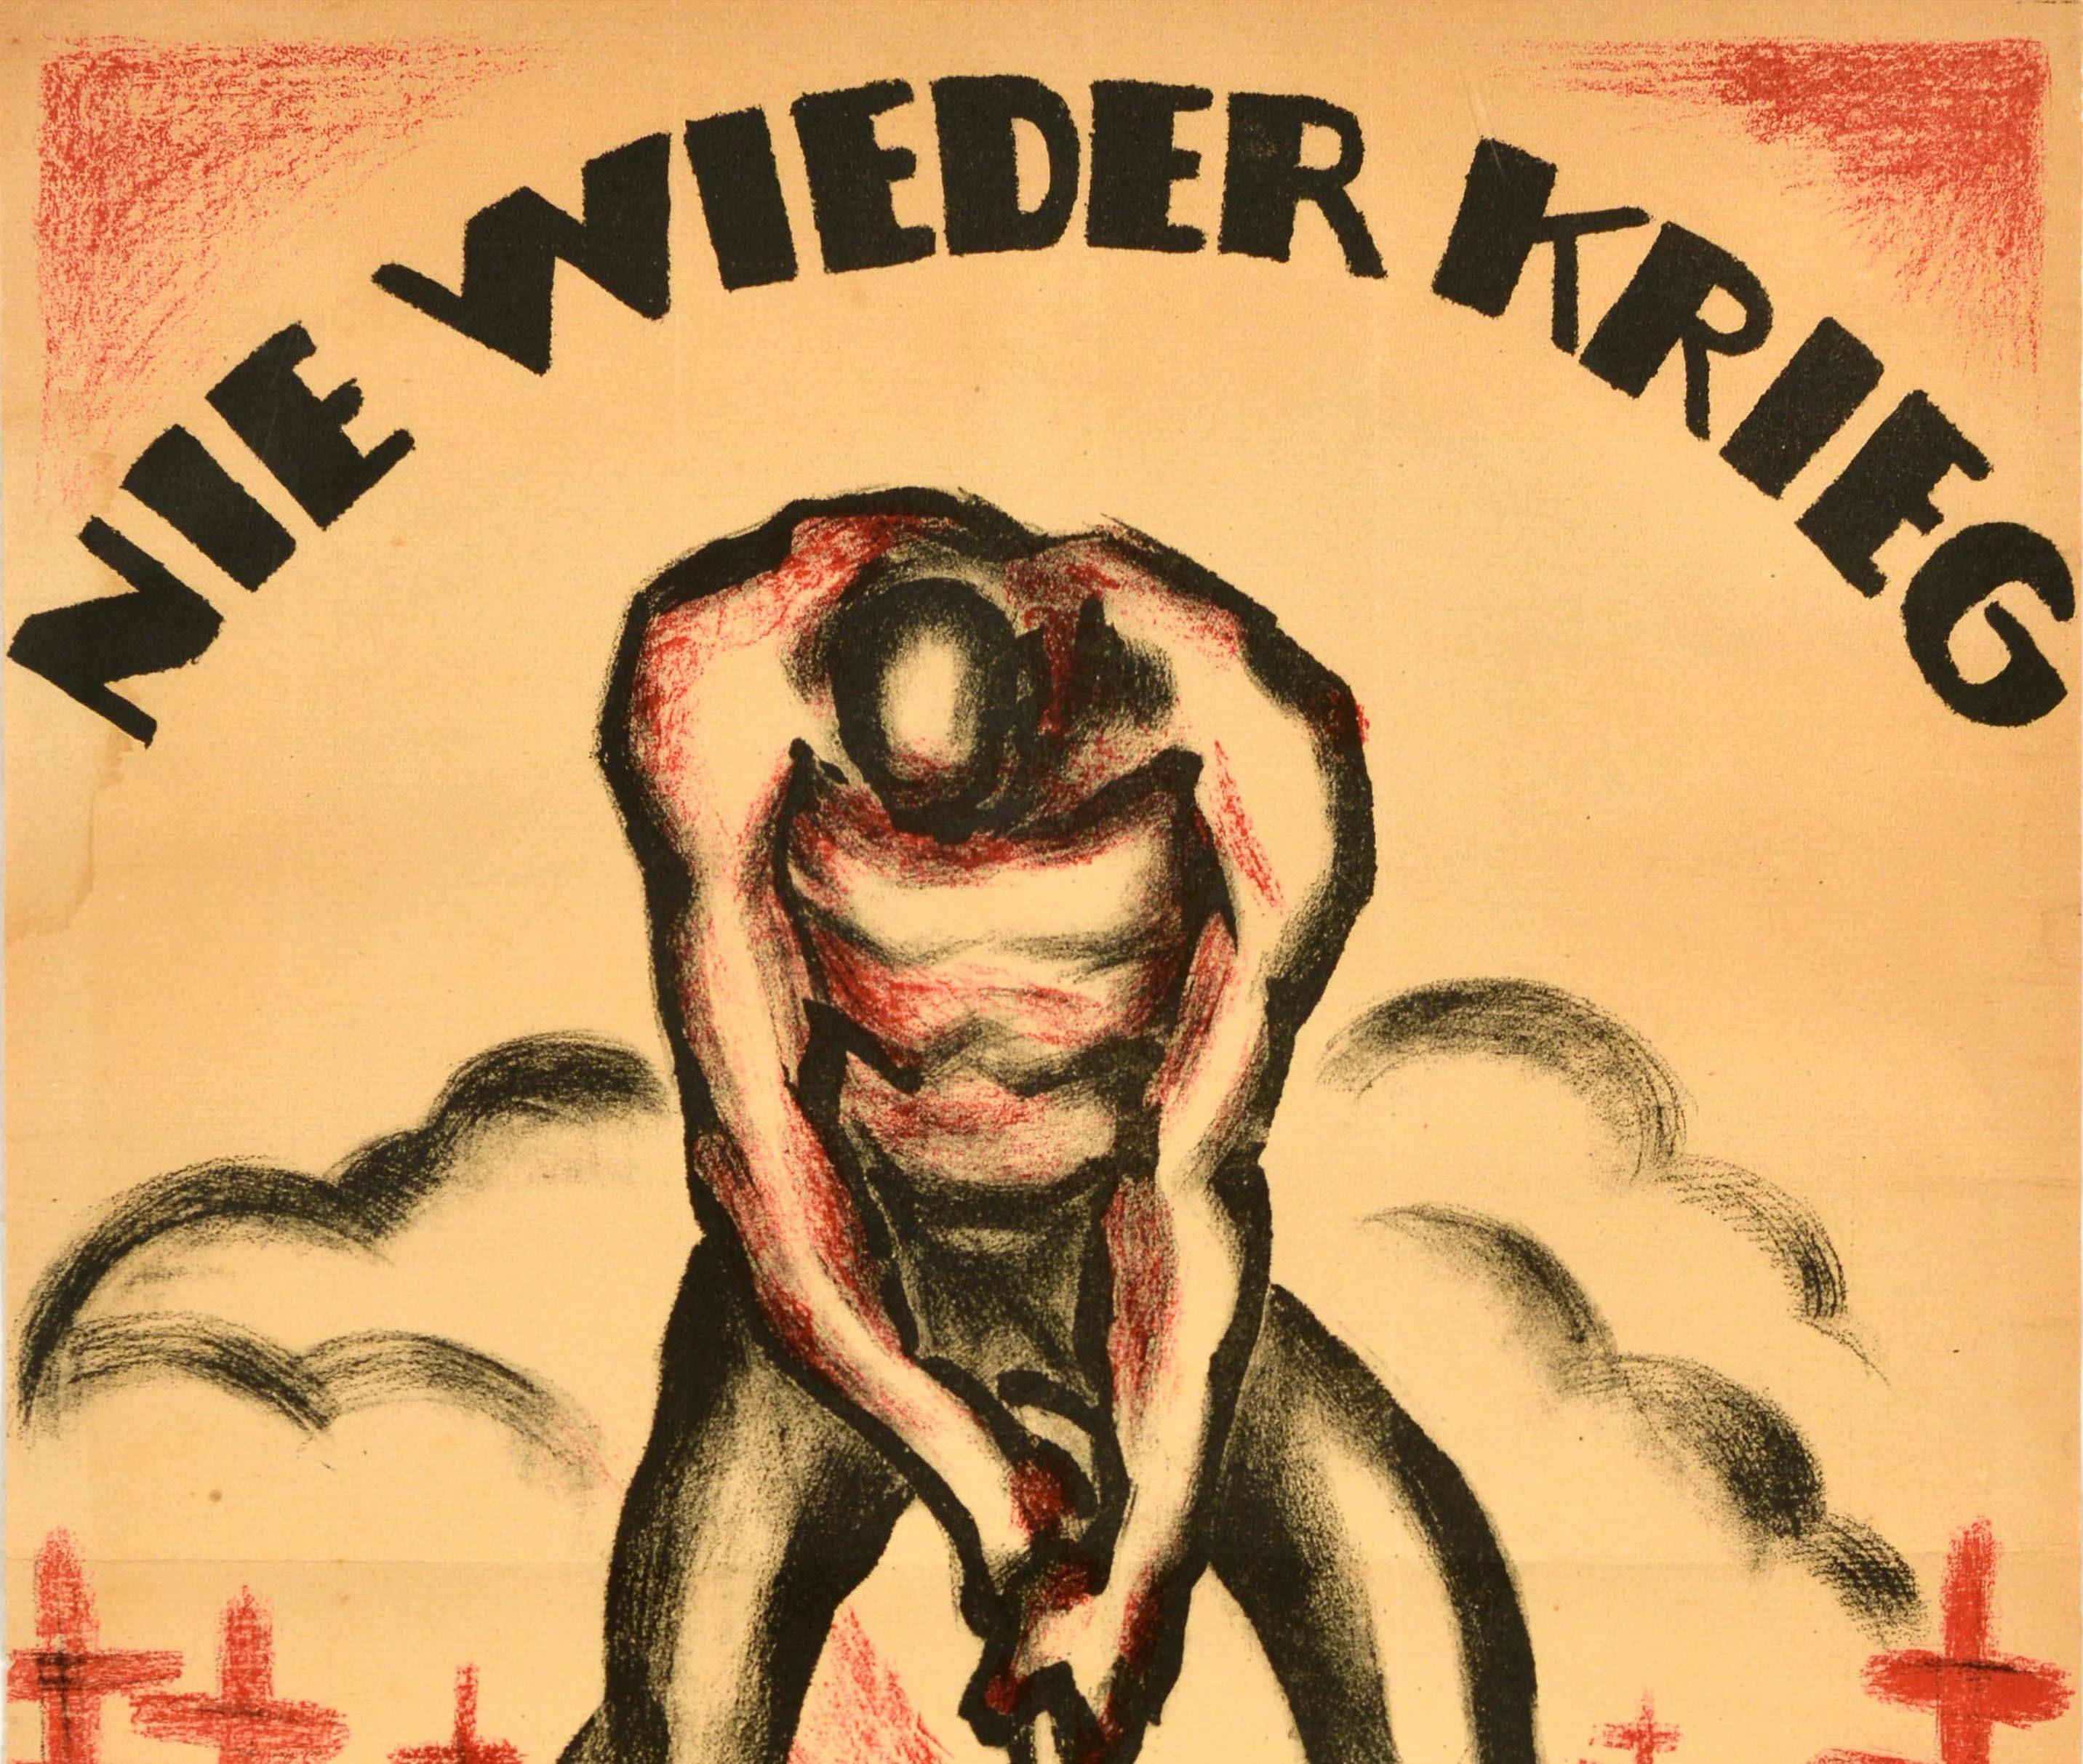 Original Antikes Original-Poster aus dem Ersten Weltkrieg, Nie Wieder Krieg, Never Again, Kriegsgrave, Kanonen – Print von Heinz H Halke